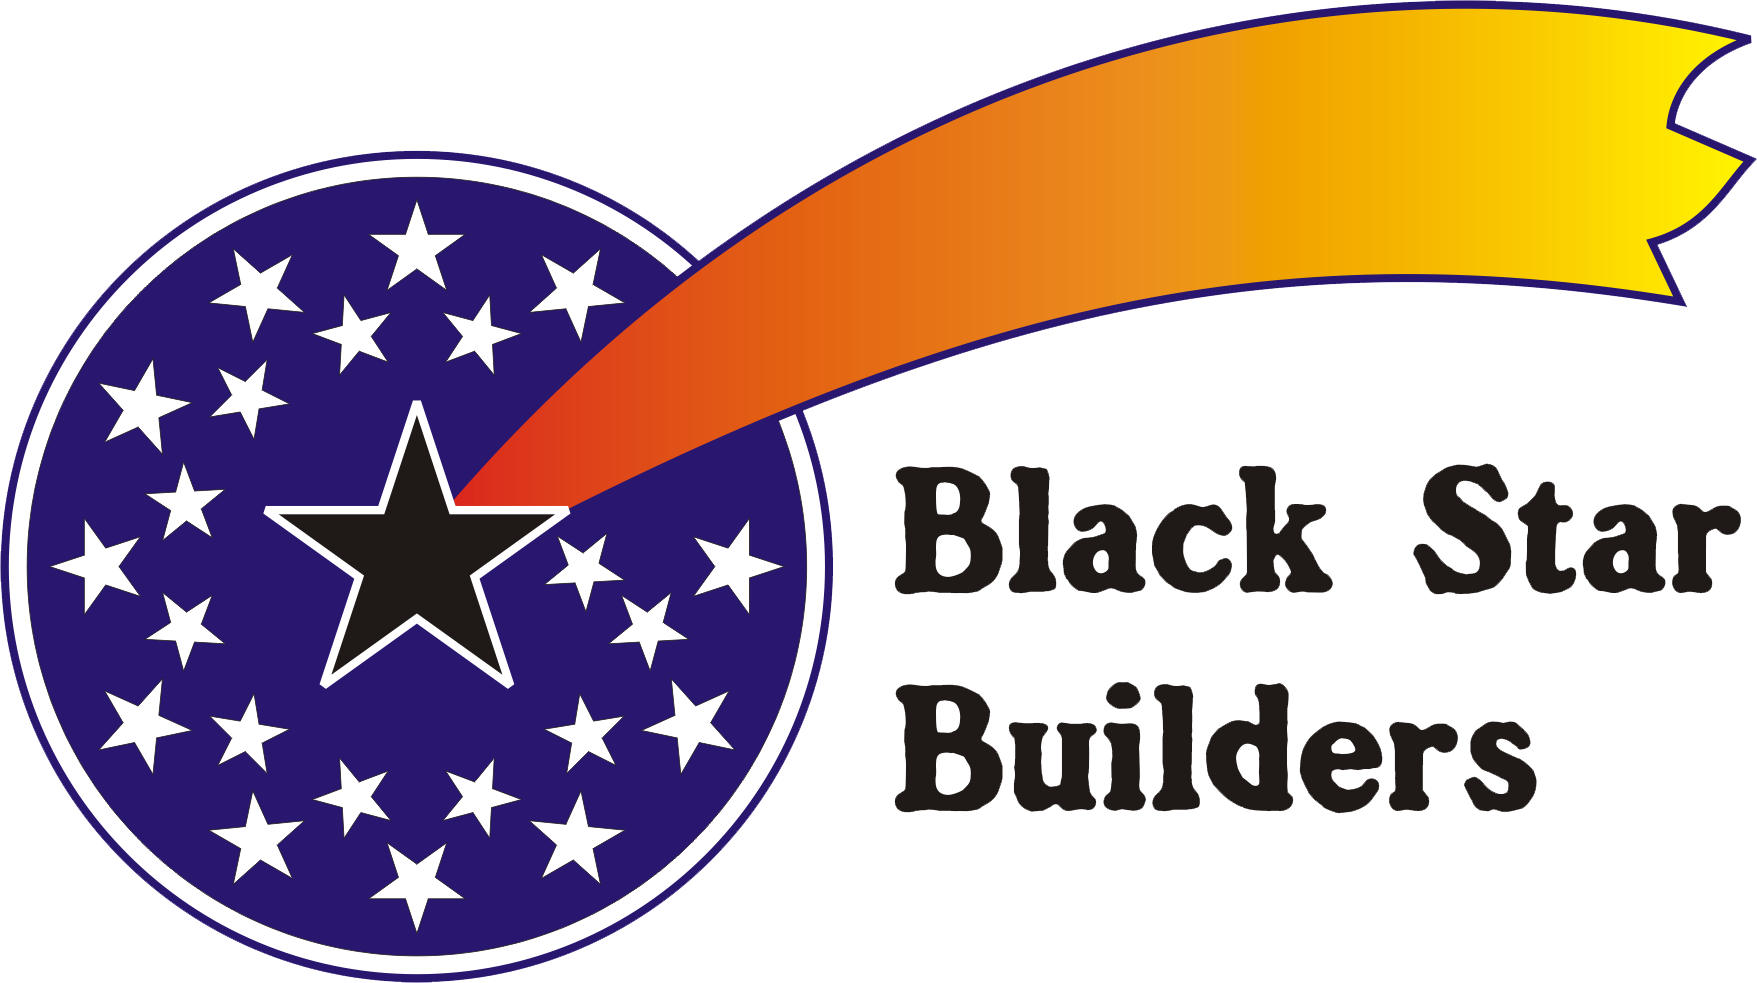 Black Star Builders